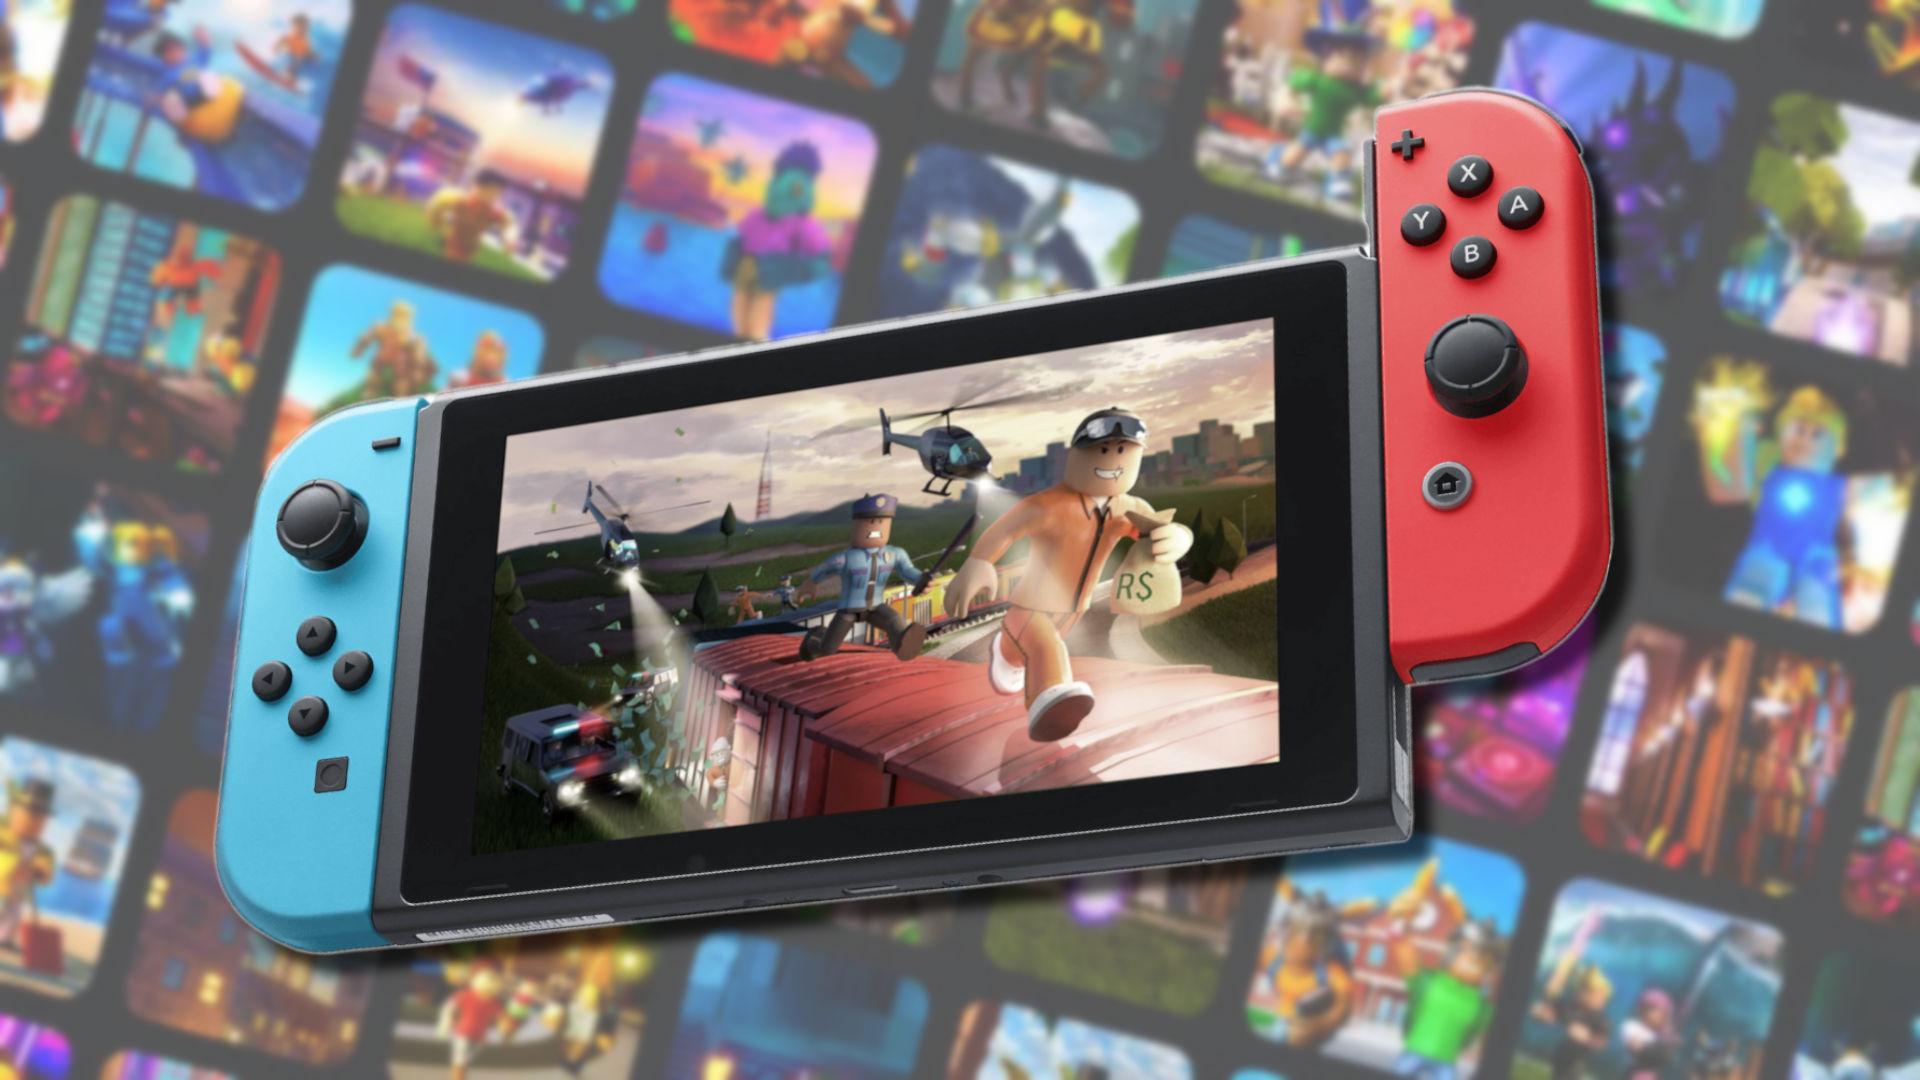 Roblox en Nintendo Switch: ¿llegará este juego a la consola híbrida? -  Dexerto